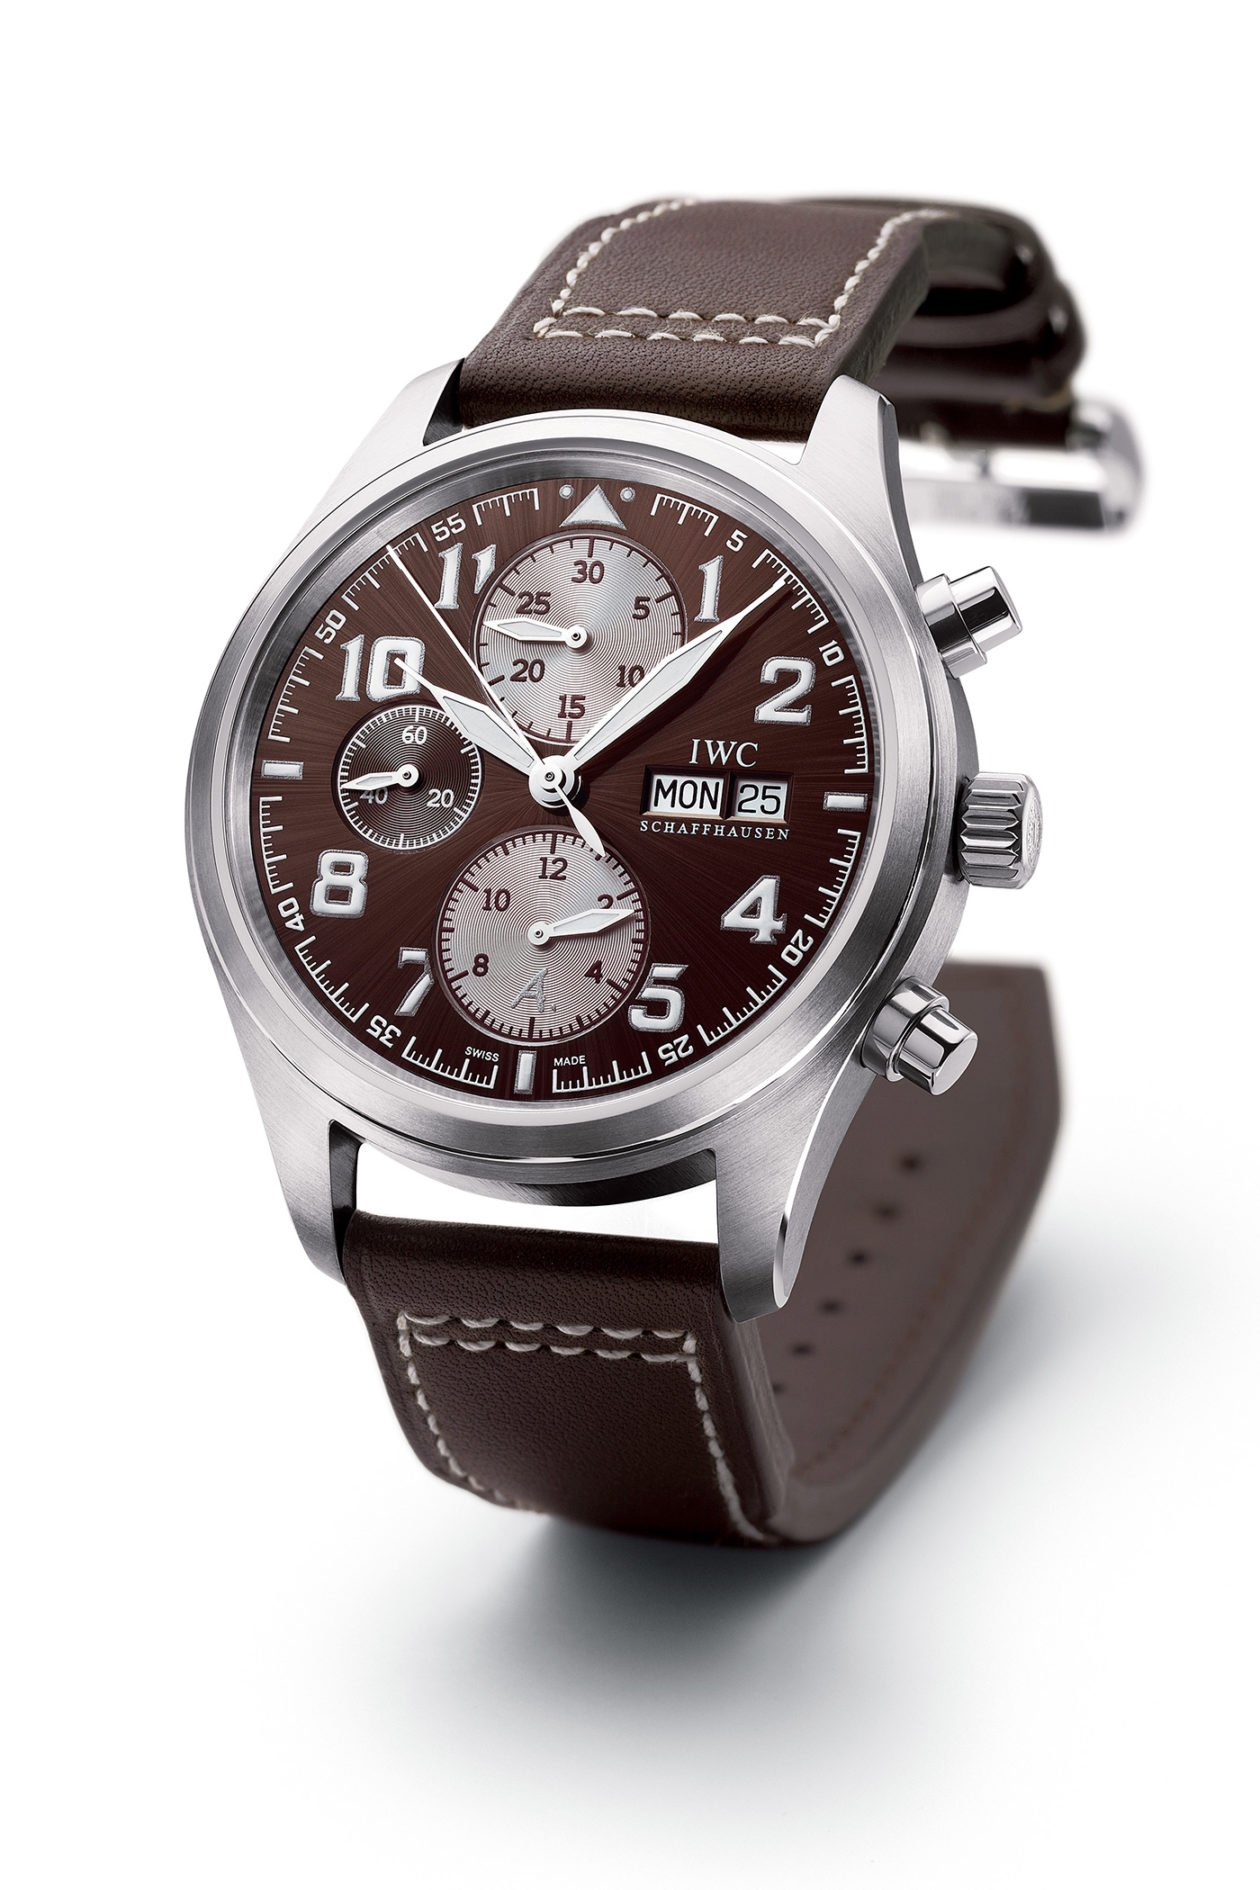 IWC - zegarki dla pilotów